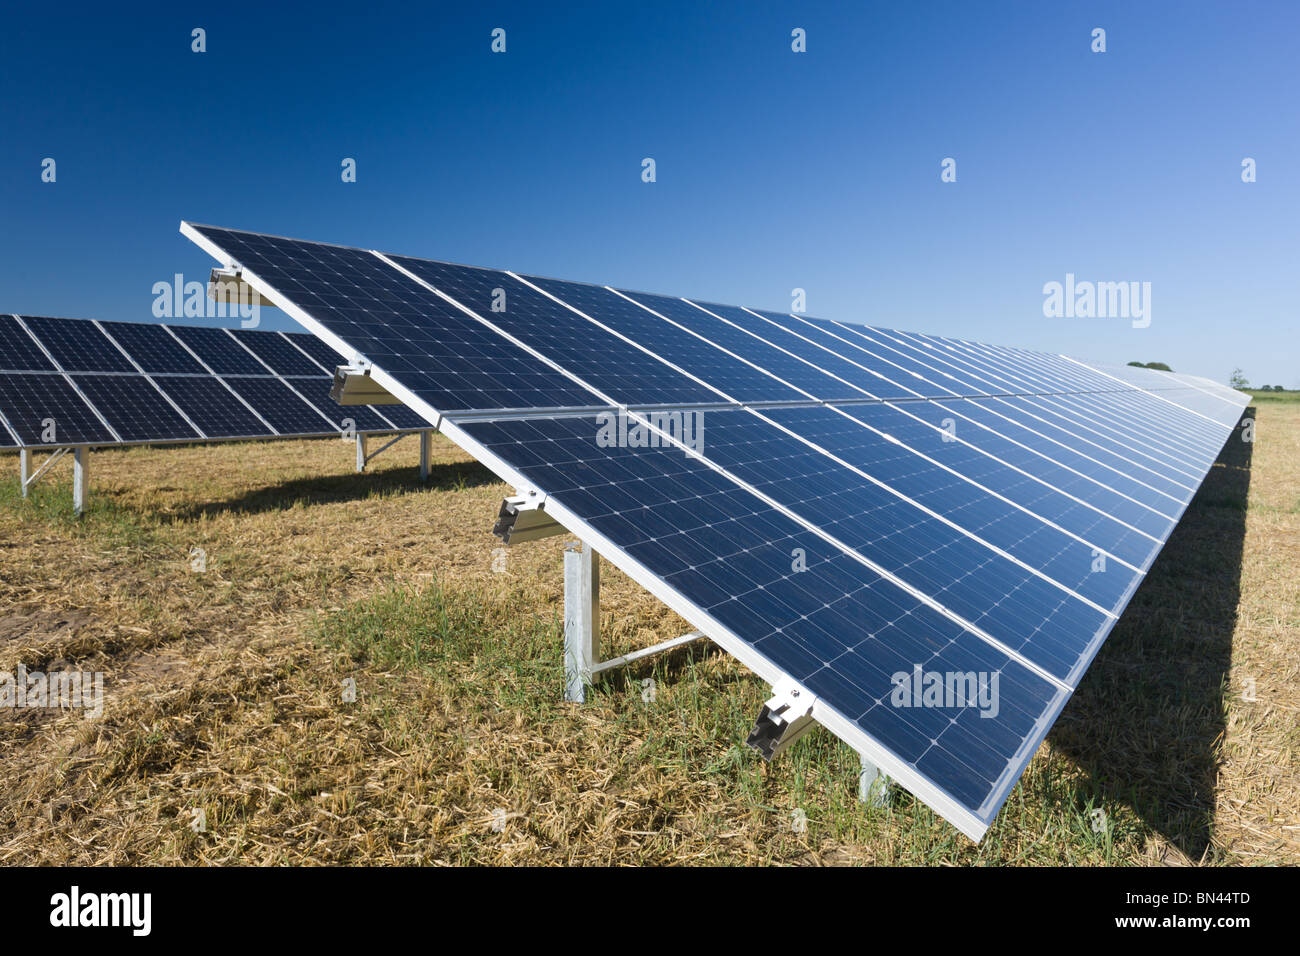 Les modules photovoltaïques dans une ferme solaire Banque D'Images